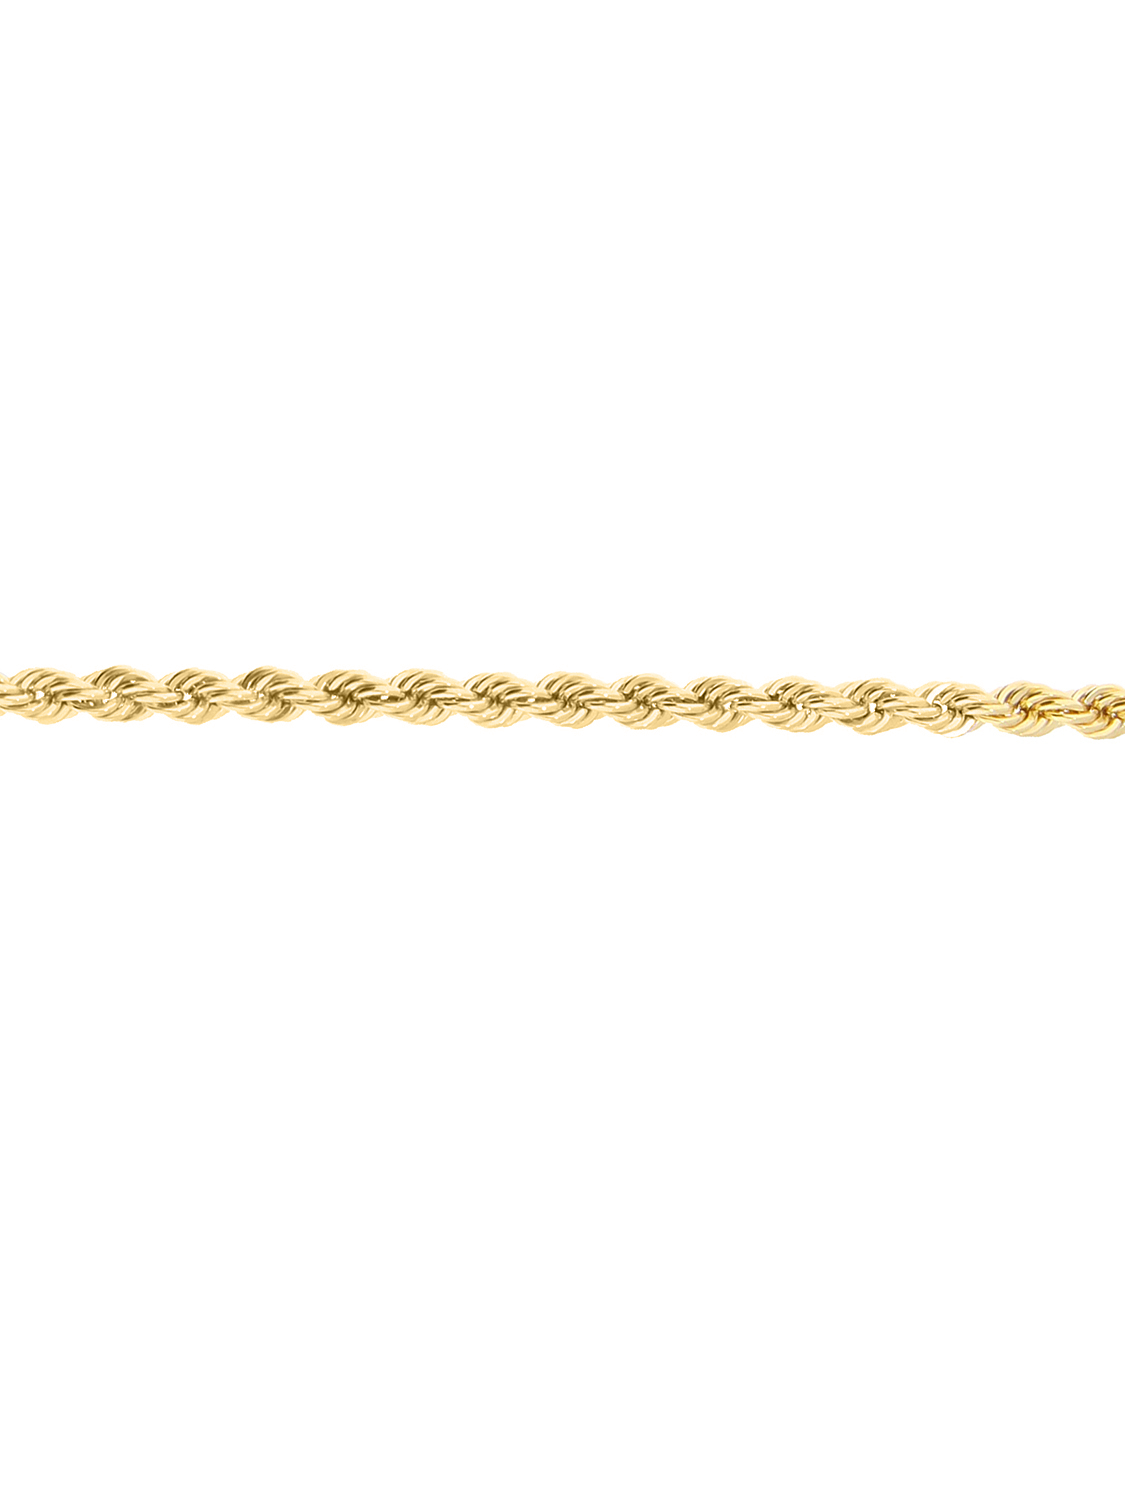 Lavflame - Halskette 585 Gold - 42cm